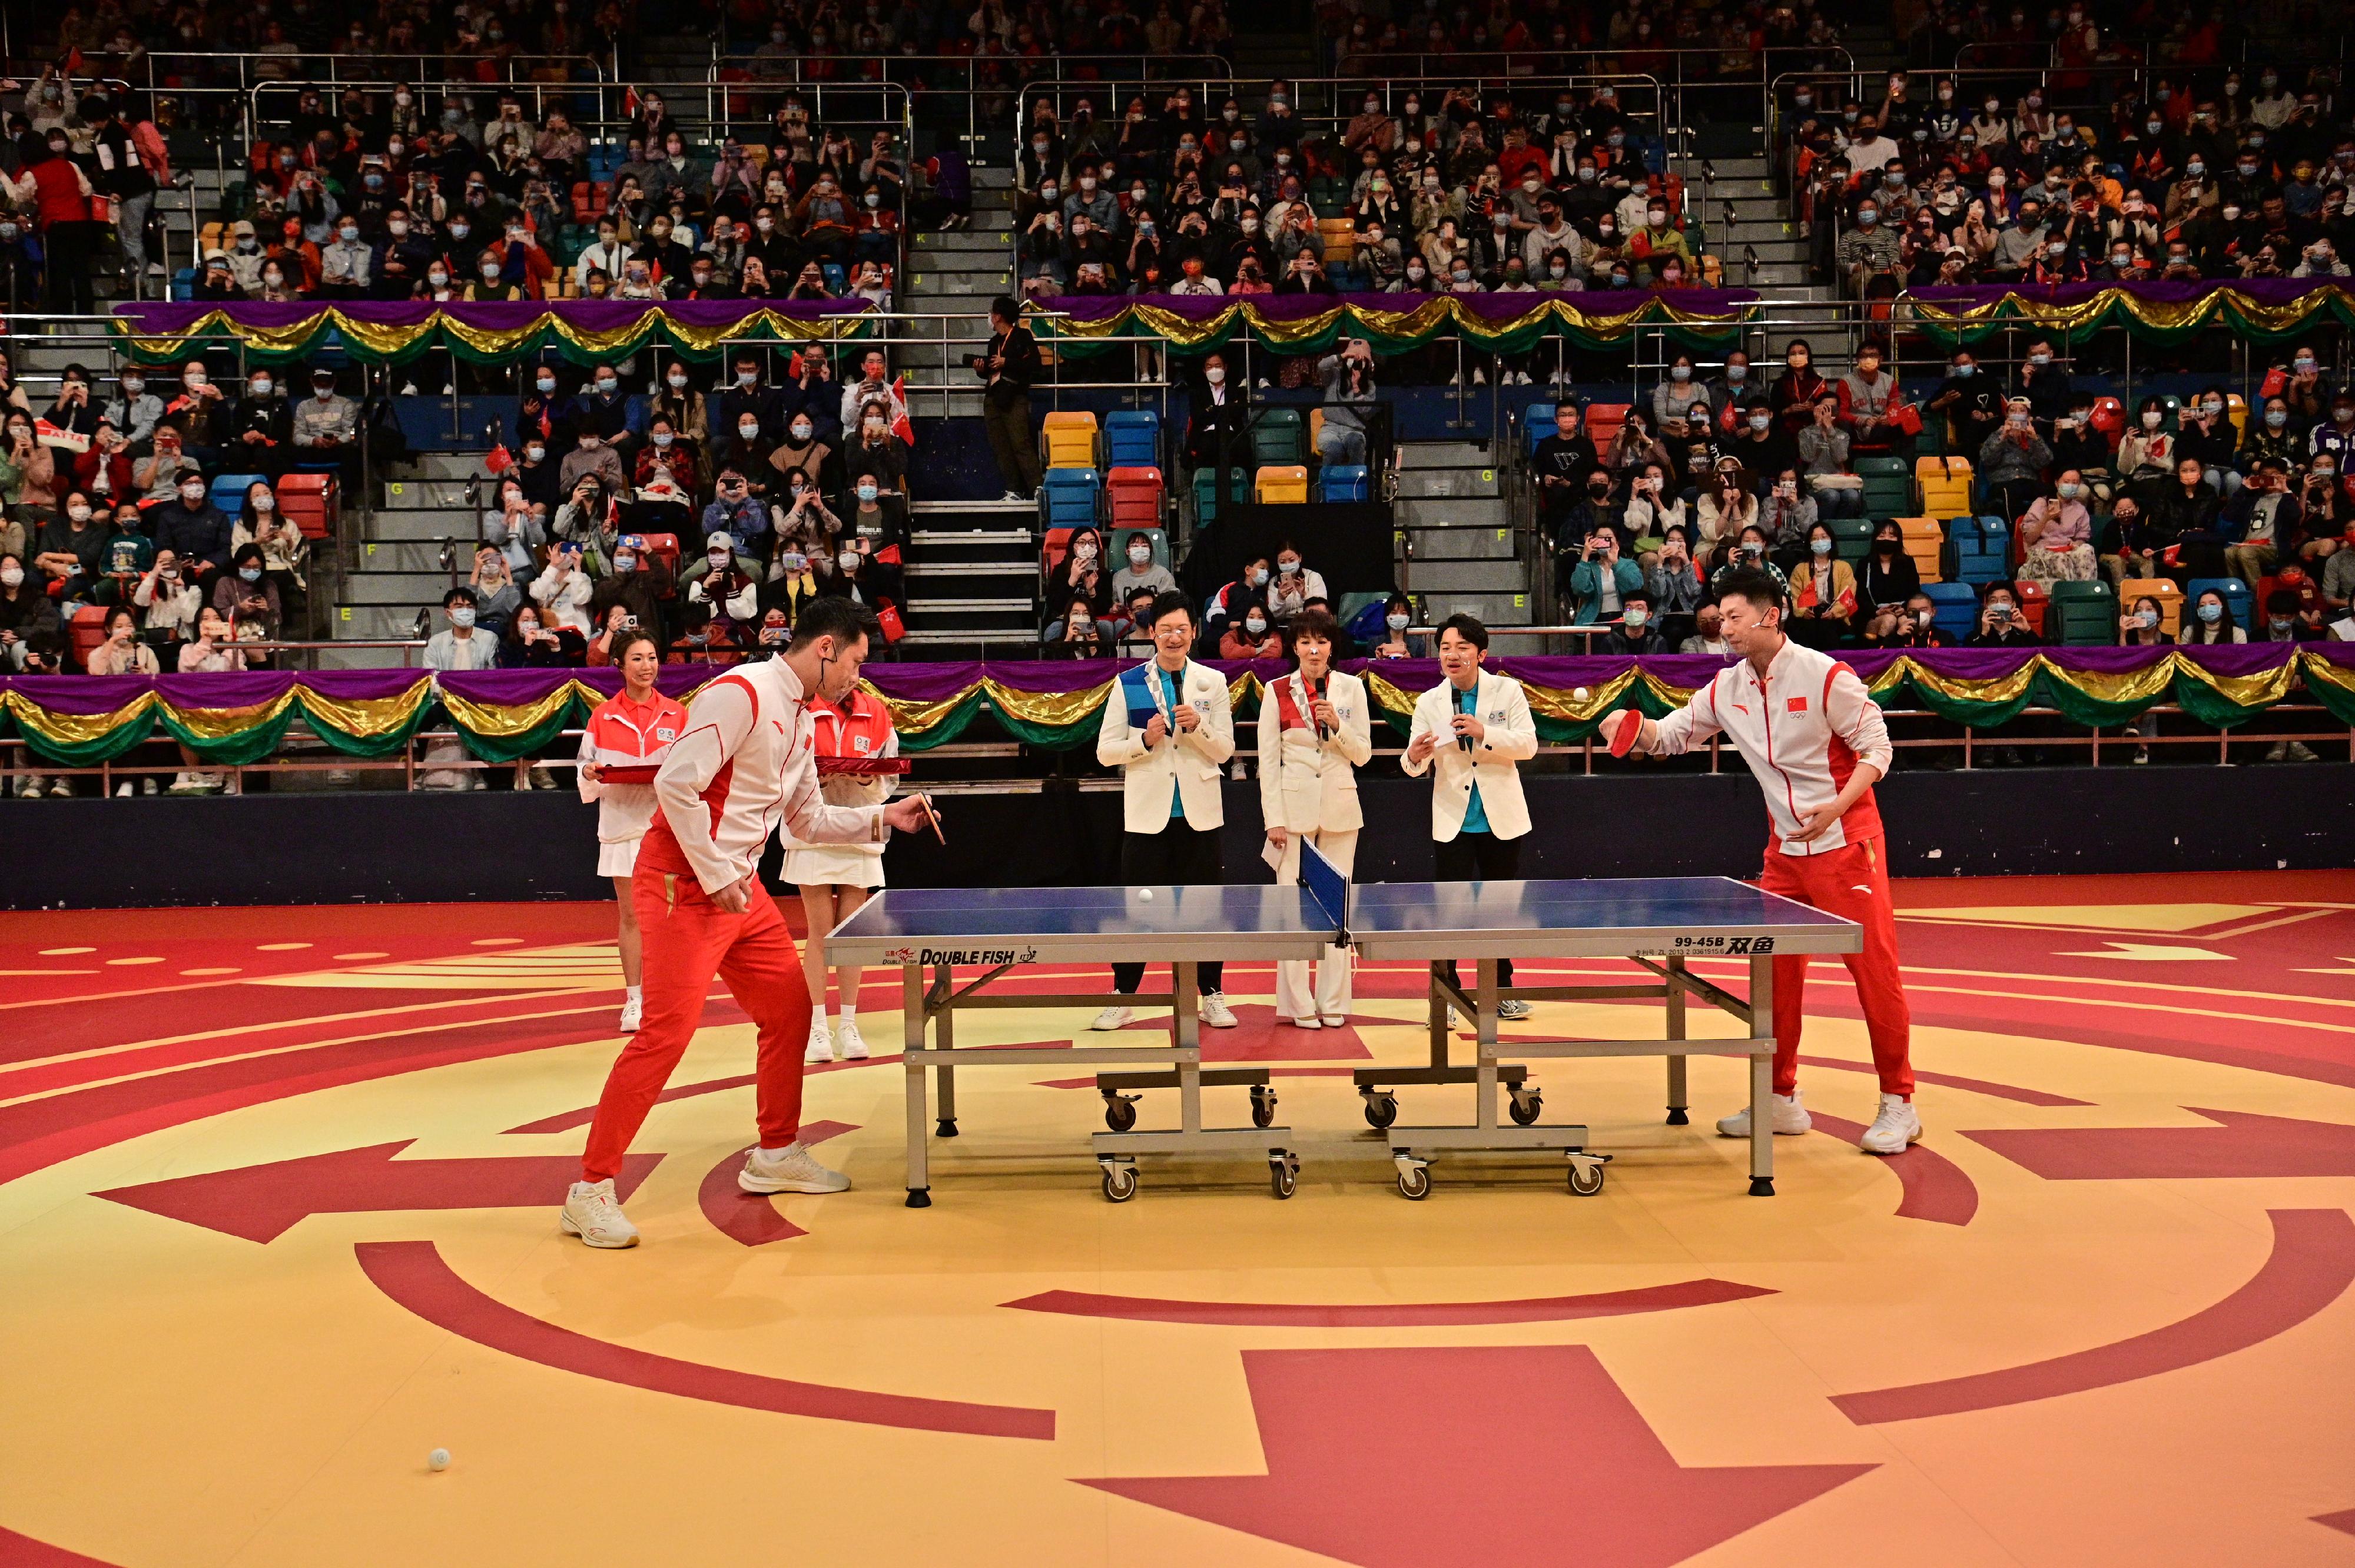 东京2020奥运会内地奥运健儿代表团今日（十二月四日）下午出席在湾仔伊利沙伯体育馆举行的「奥运健儿大汇演」。图示内地乒乓球运动员马龙（前排右）和许昕（前排左）参与竞技比试。